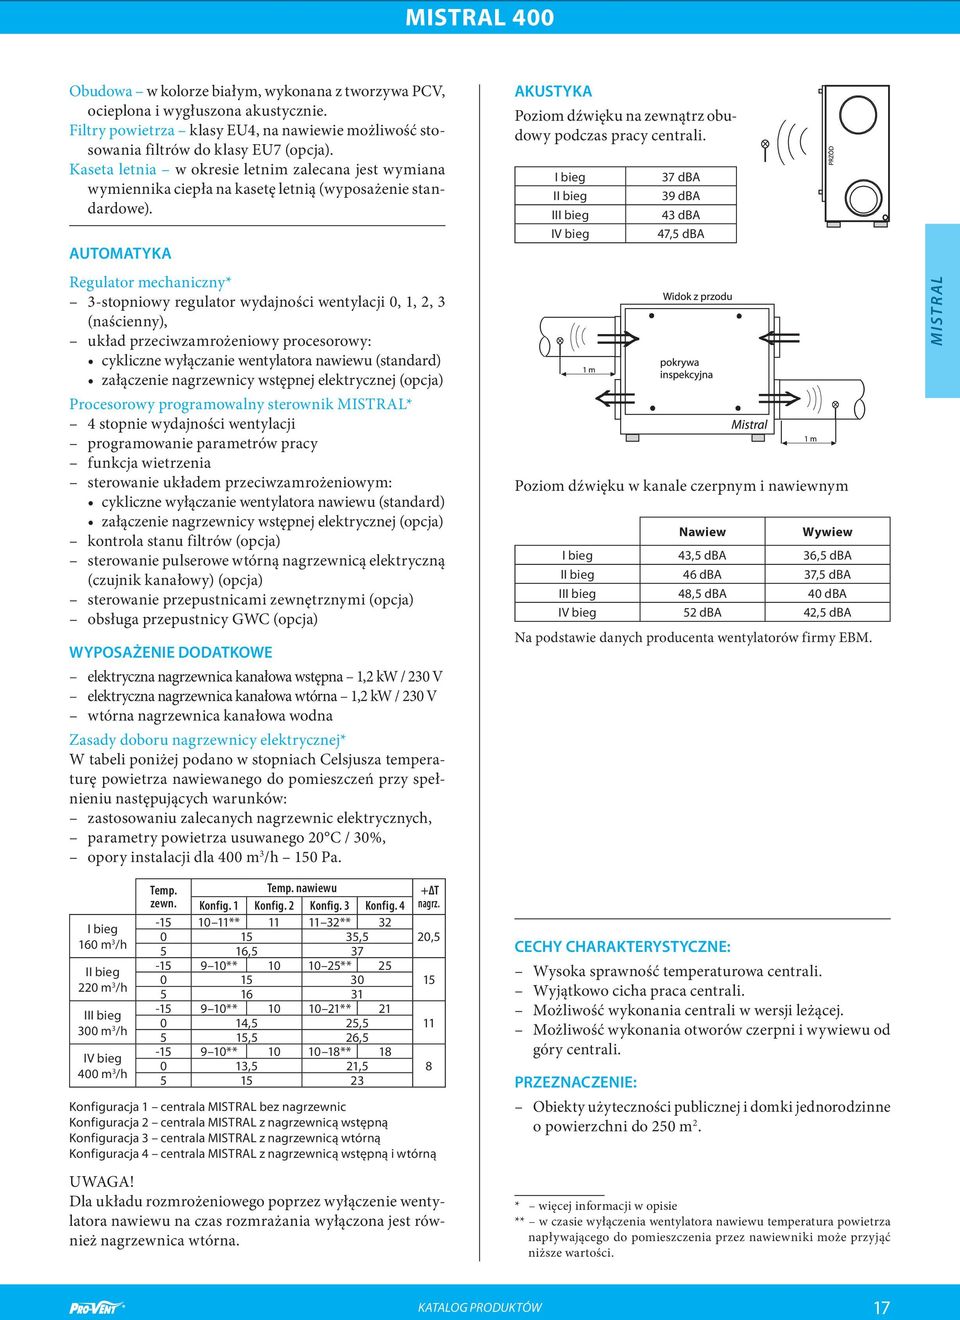 AUTOMATYKA Regulator mechaniczny* 3-stopniowy regulator wydajności wentylacji 0, 1, 2, 3 (naścienny), układ przeciwzamrożeniowy procesorowy: cykliczne wyłączanie wentylatora nawiewu (standard)